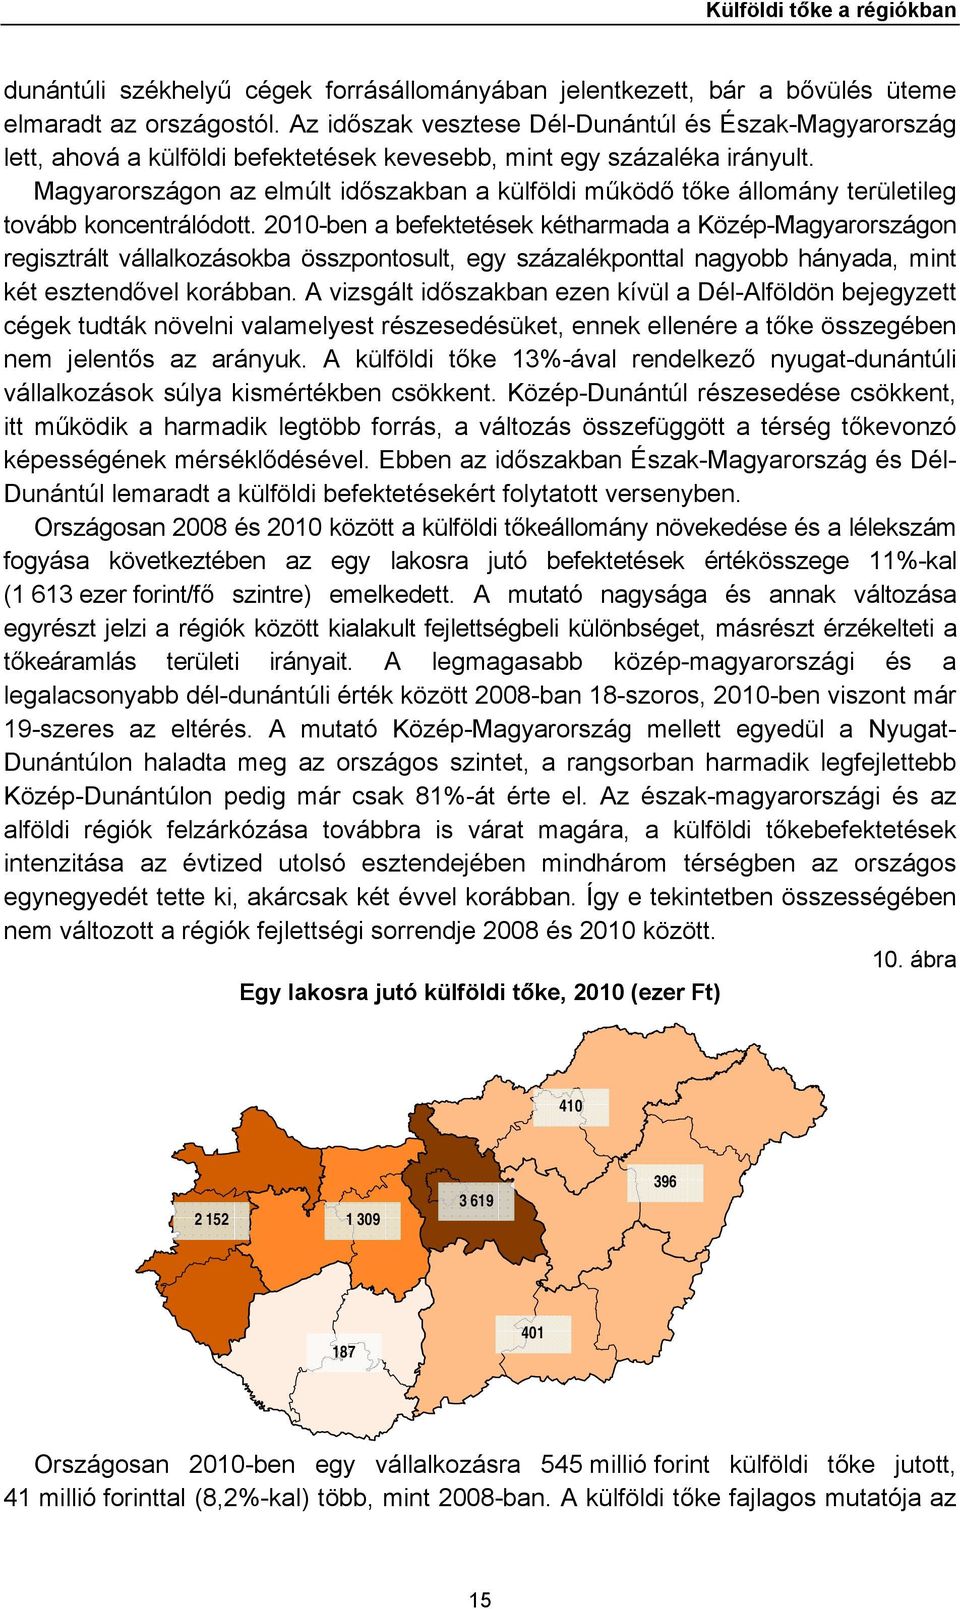 Magyarországon az elmúlt időszakban a külföldi működő tőke állomány területileg tovább koncentrálódott.